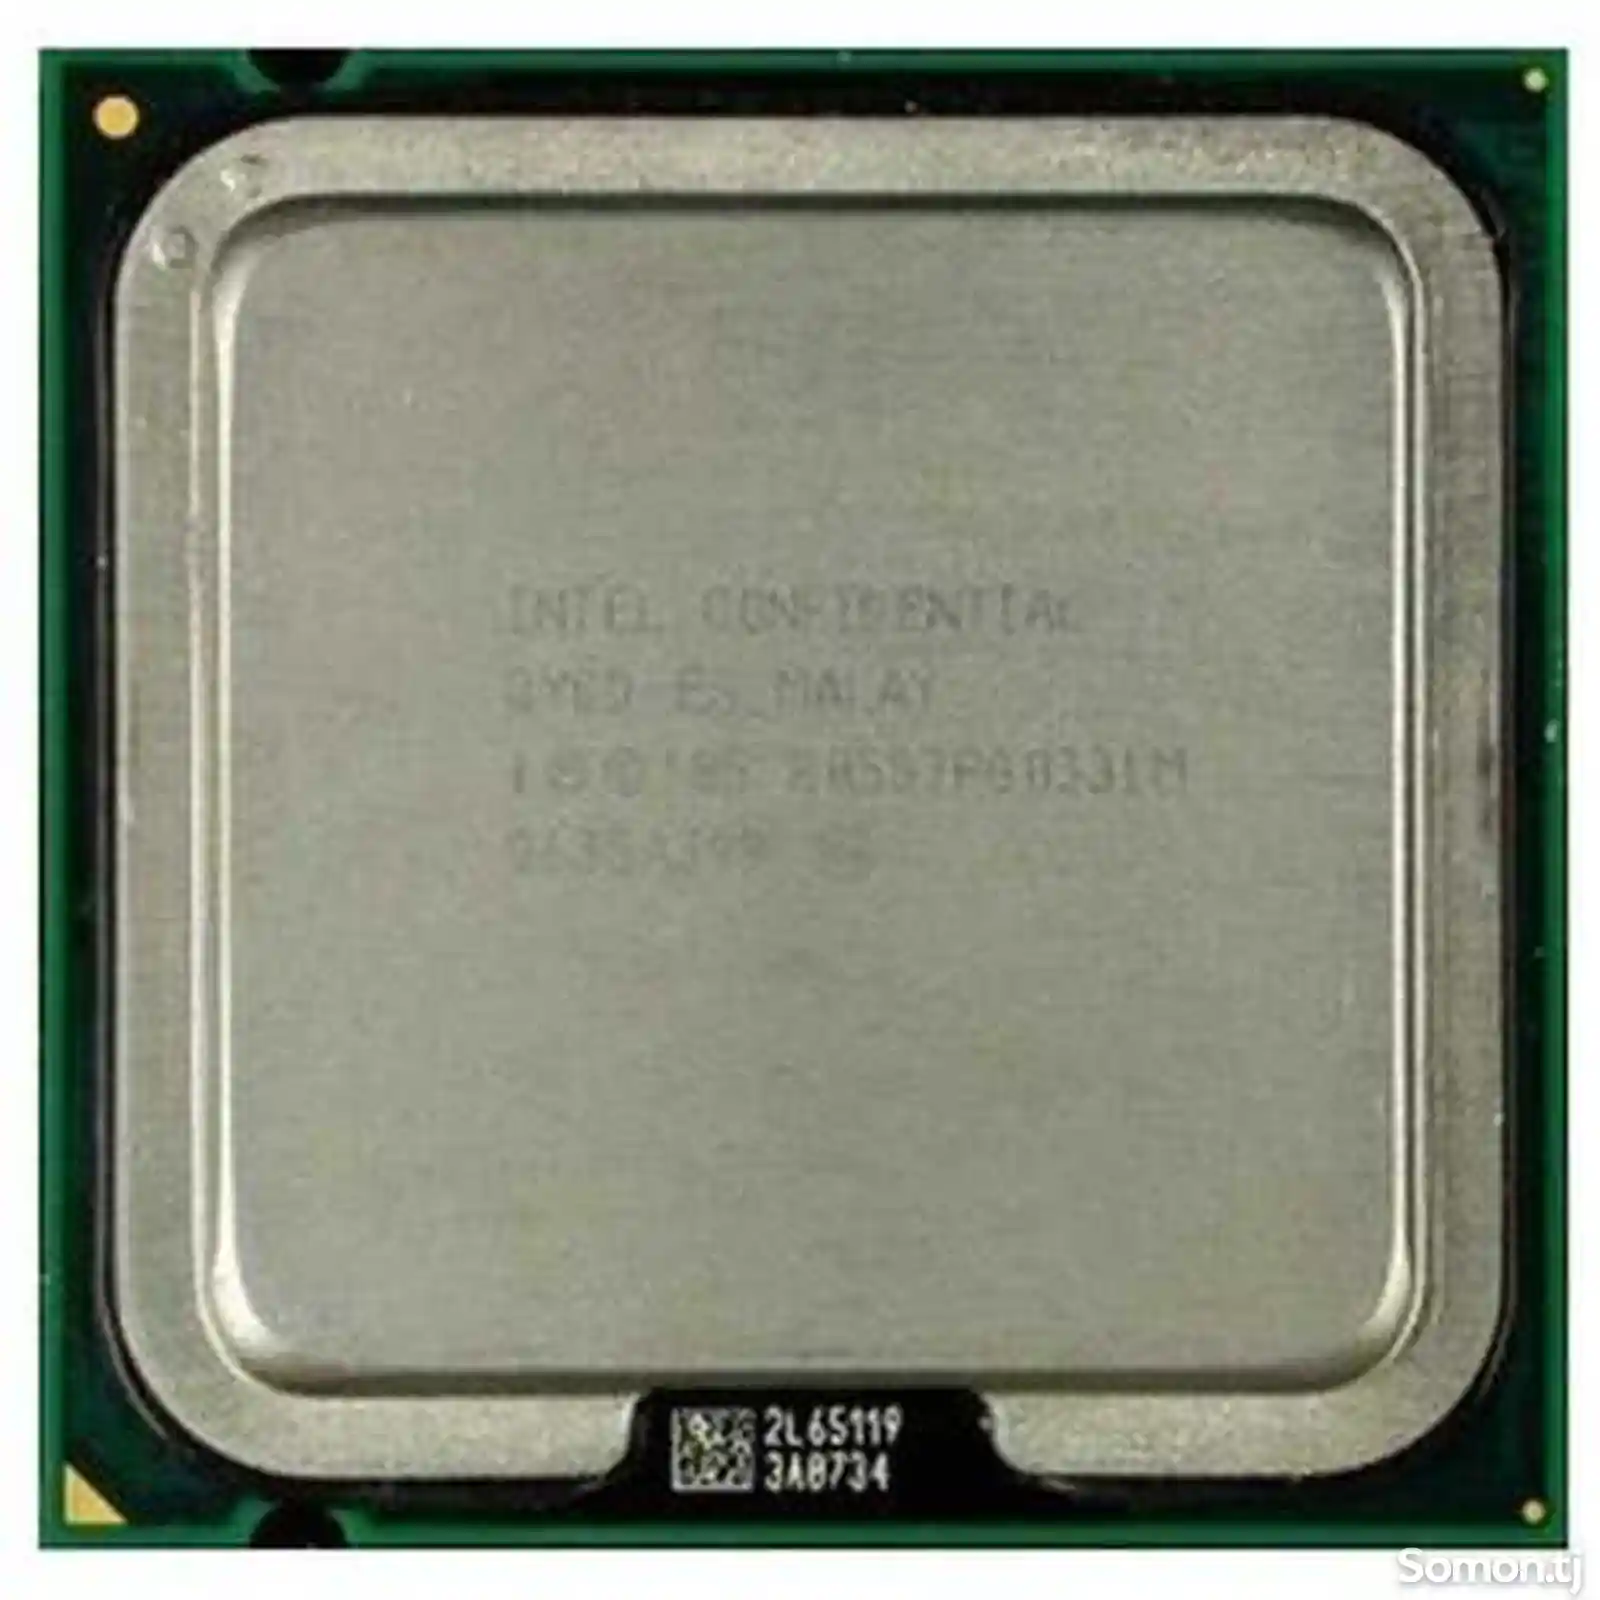 Процессор Dual core 2.20mhz E2200